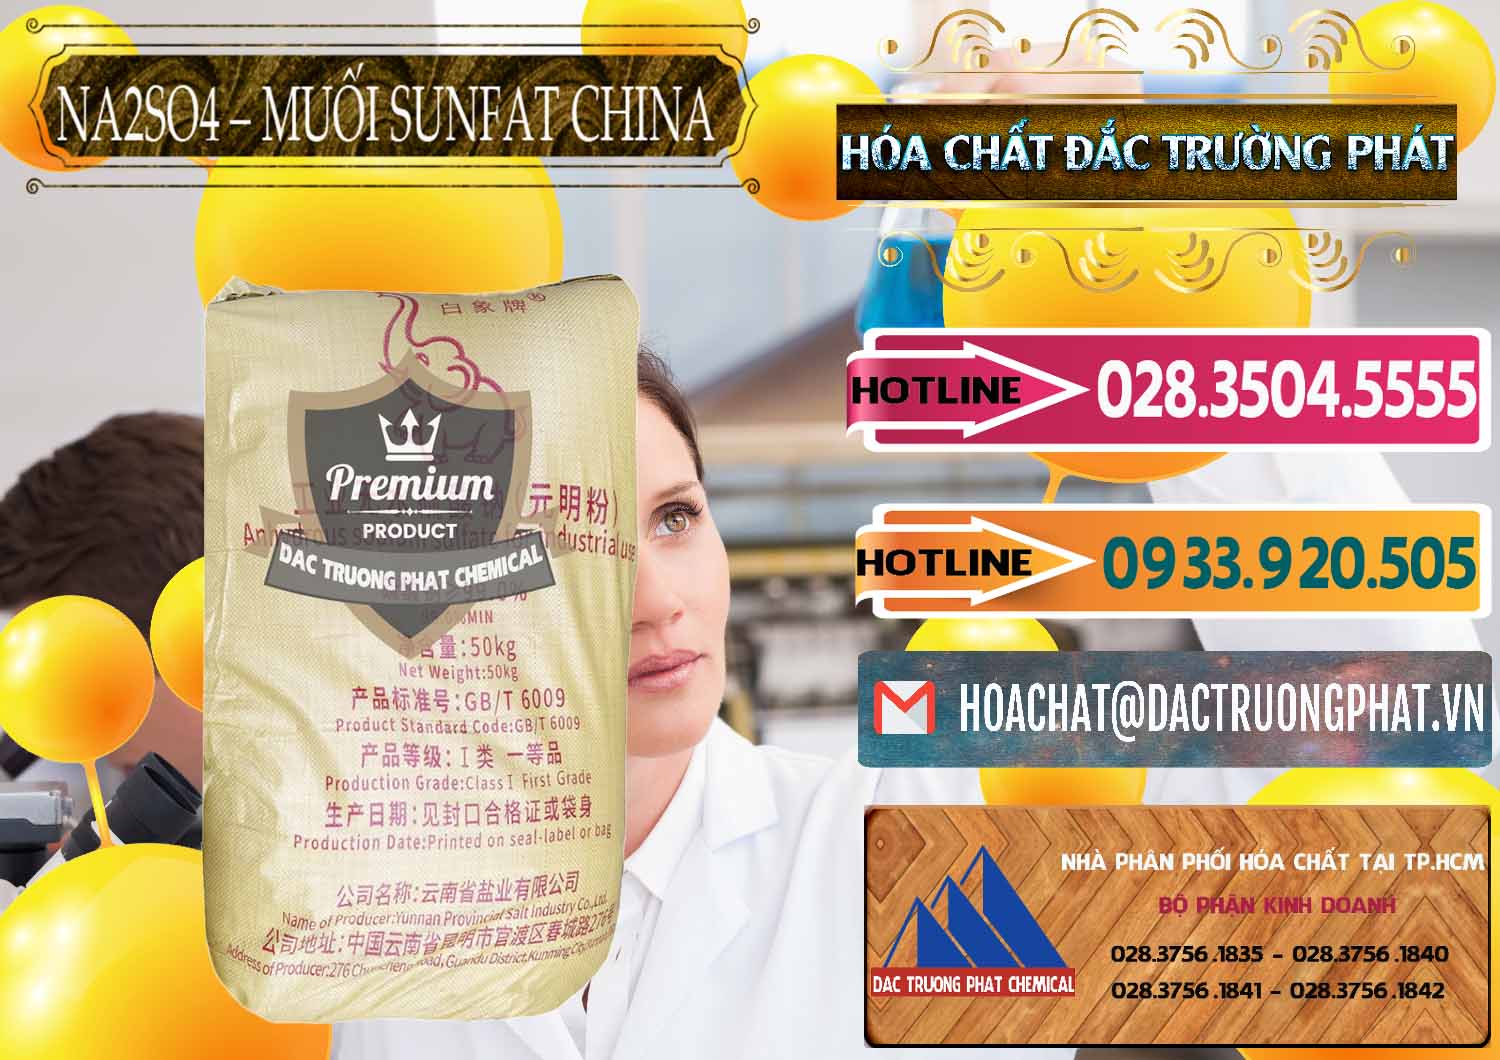 Cty chuyên bán _ phân phối Sodium Sulphate - Muối Sunfat Na2SO4 Logo Con Voi Trung Quốc China - 0409 - Đơn vị chuyên bán & phân phối hóa chất tại TP.HCM - dactruongphat.vn